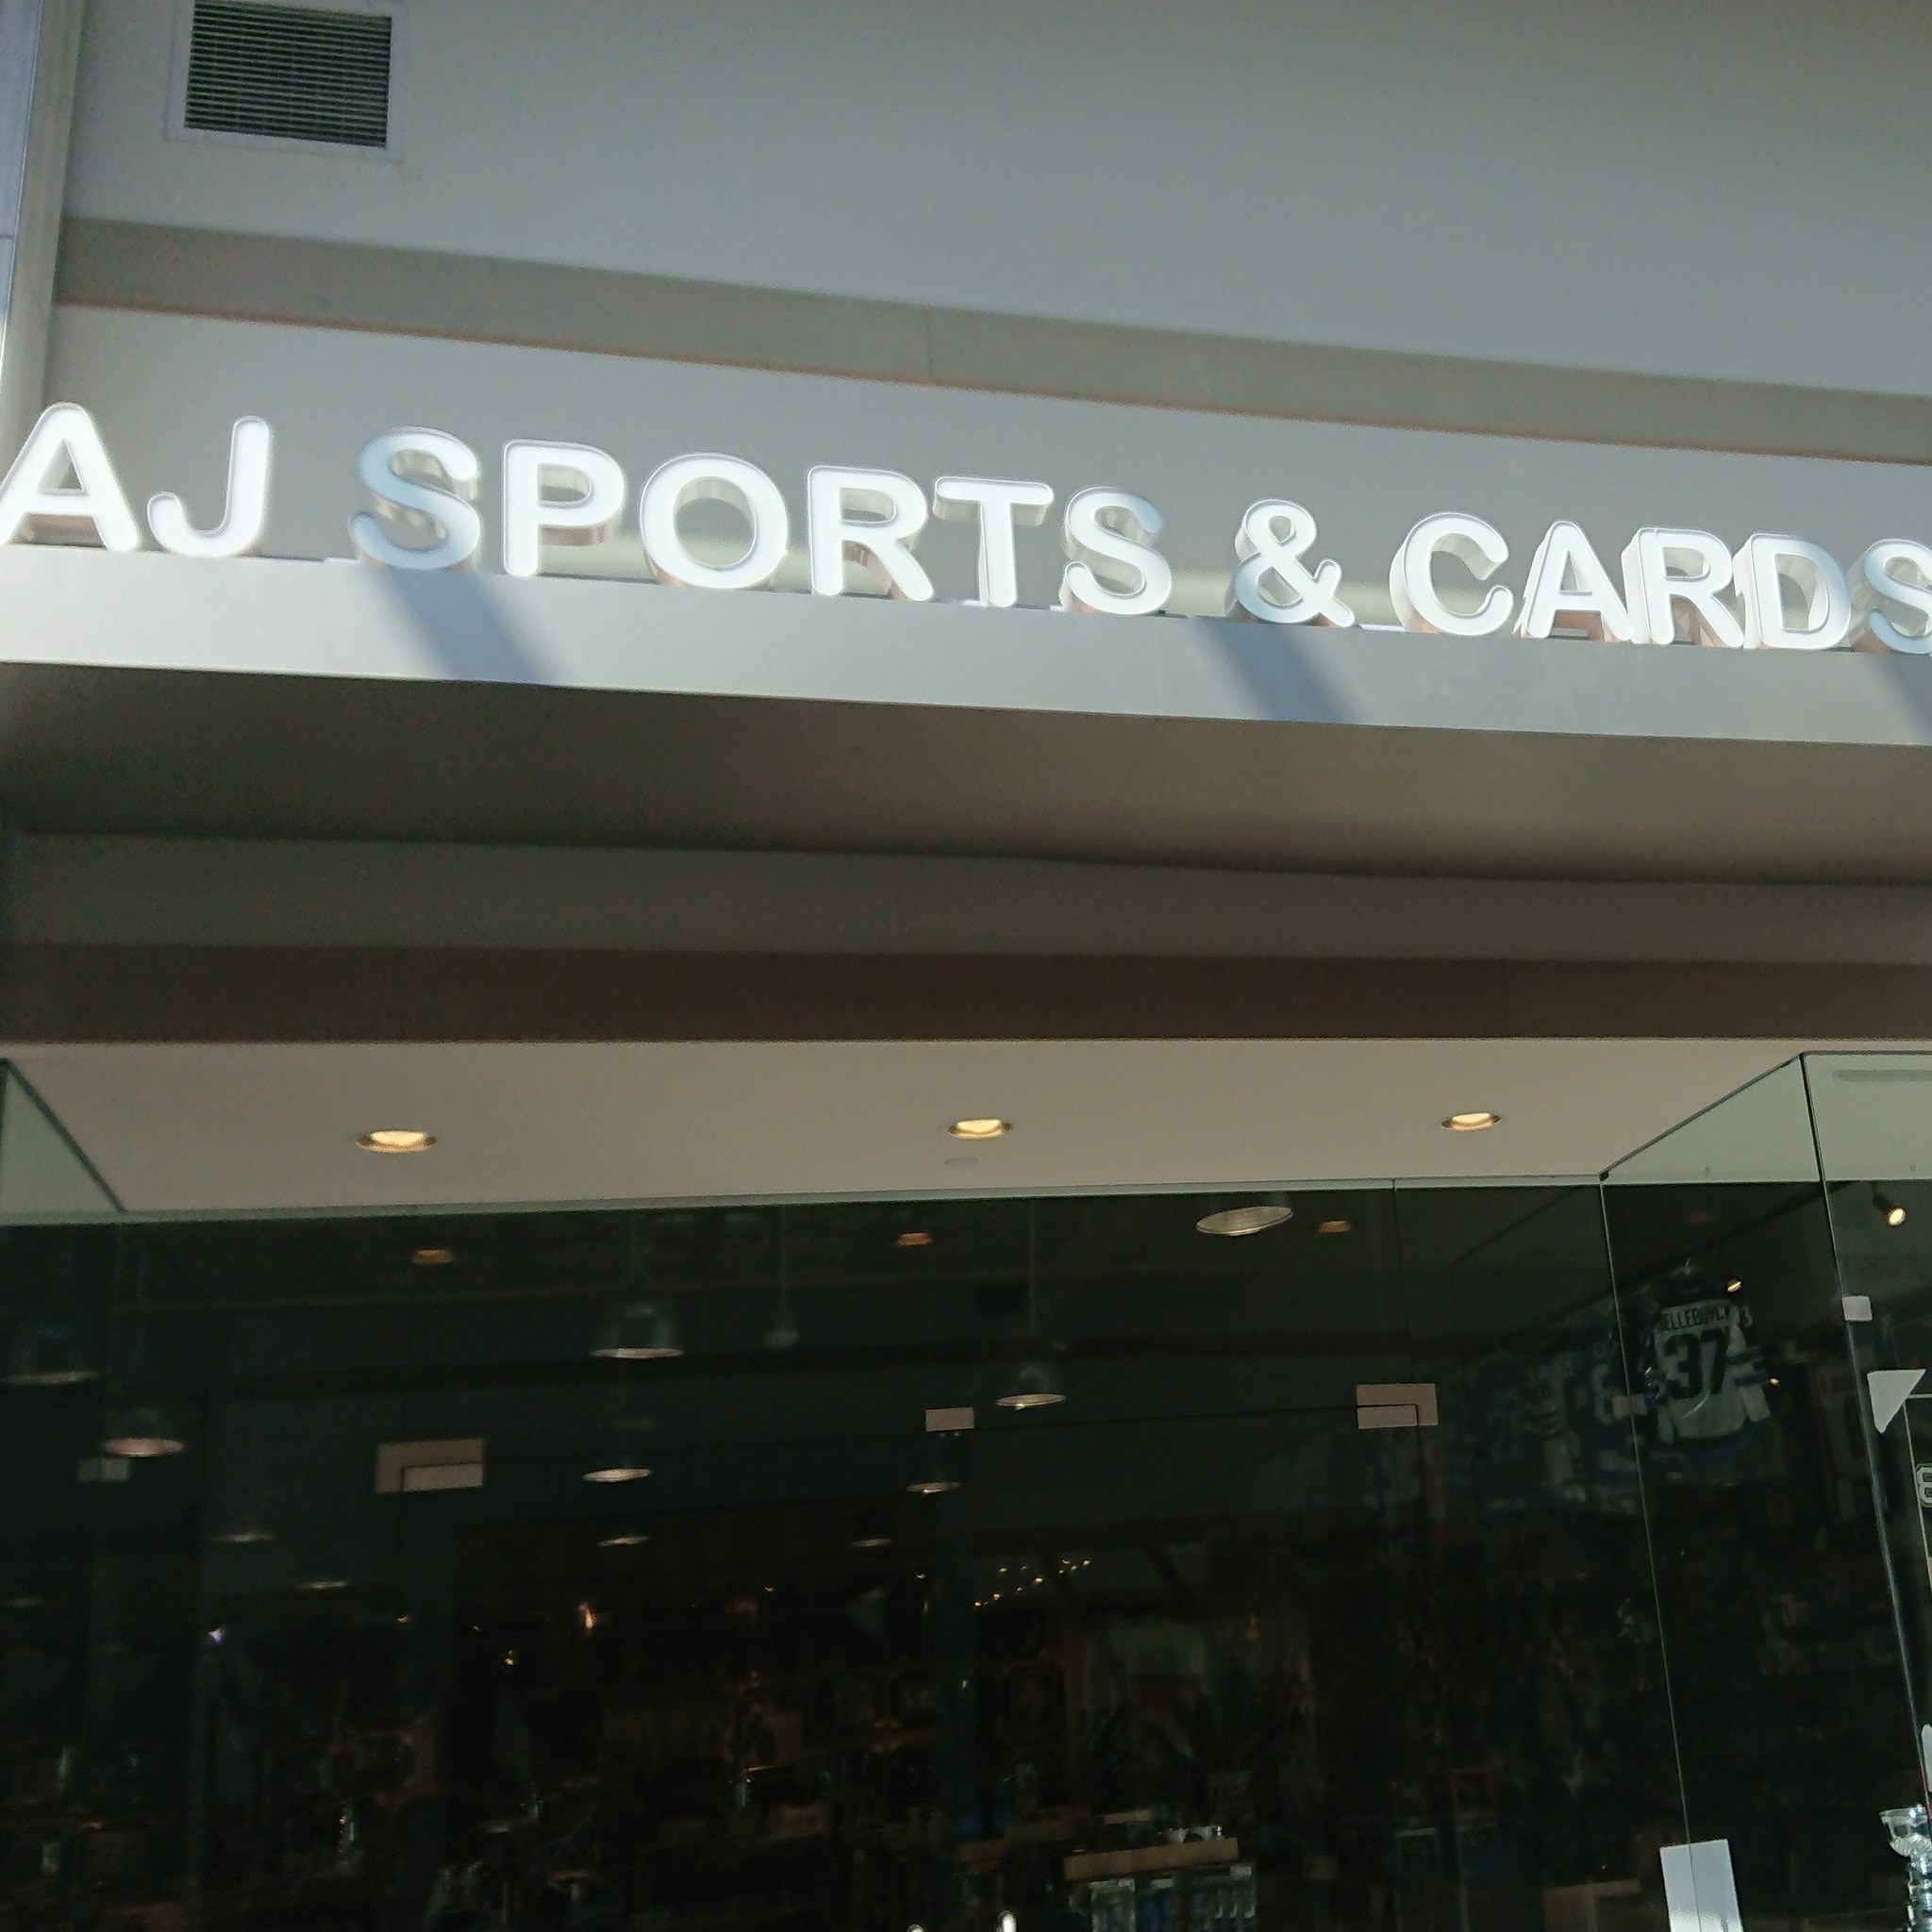 AJ Sports & Cards